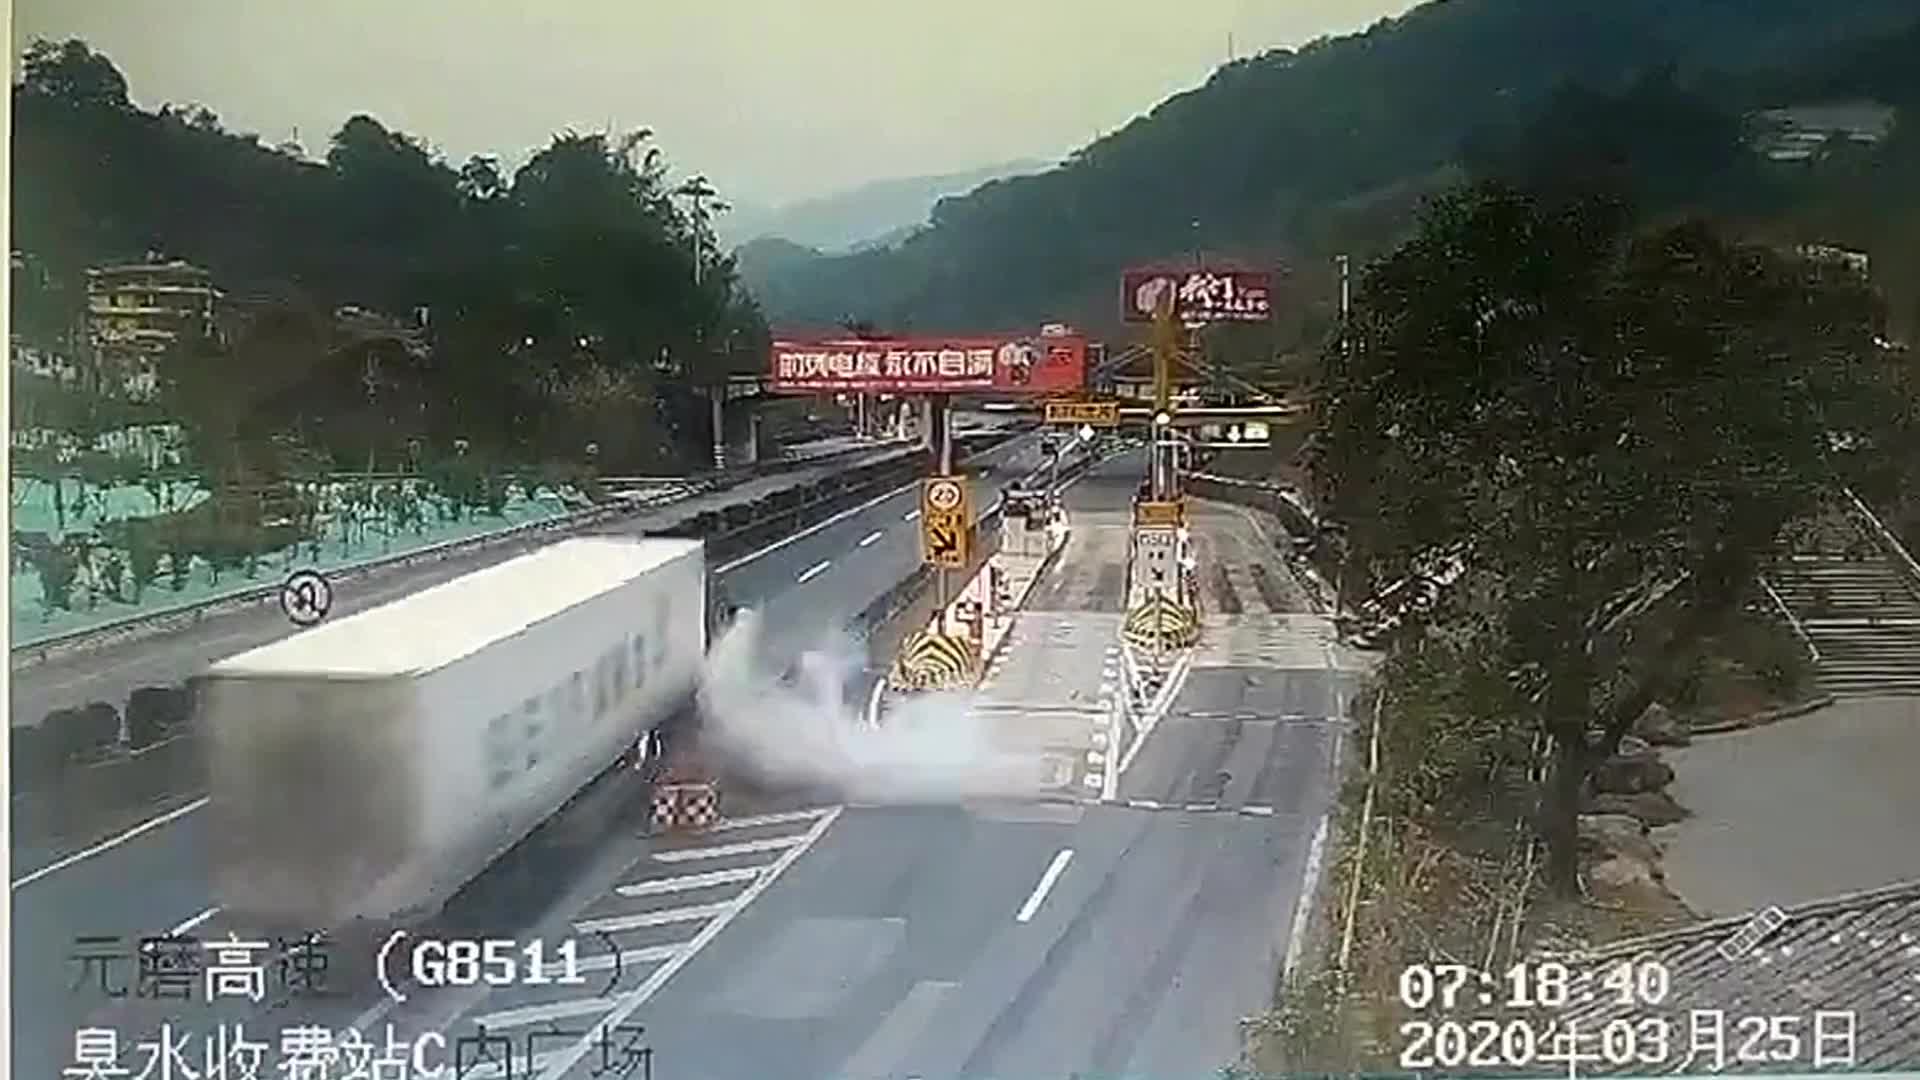 An ninh - Hình sự - Clip: Xe container bỗng nhiên bốc cháy trên đường cao tốc 